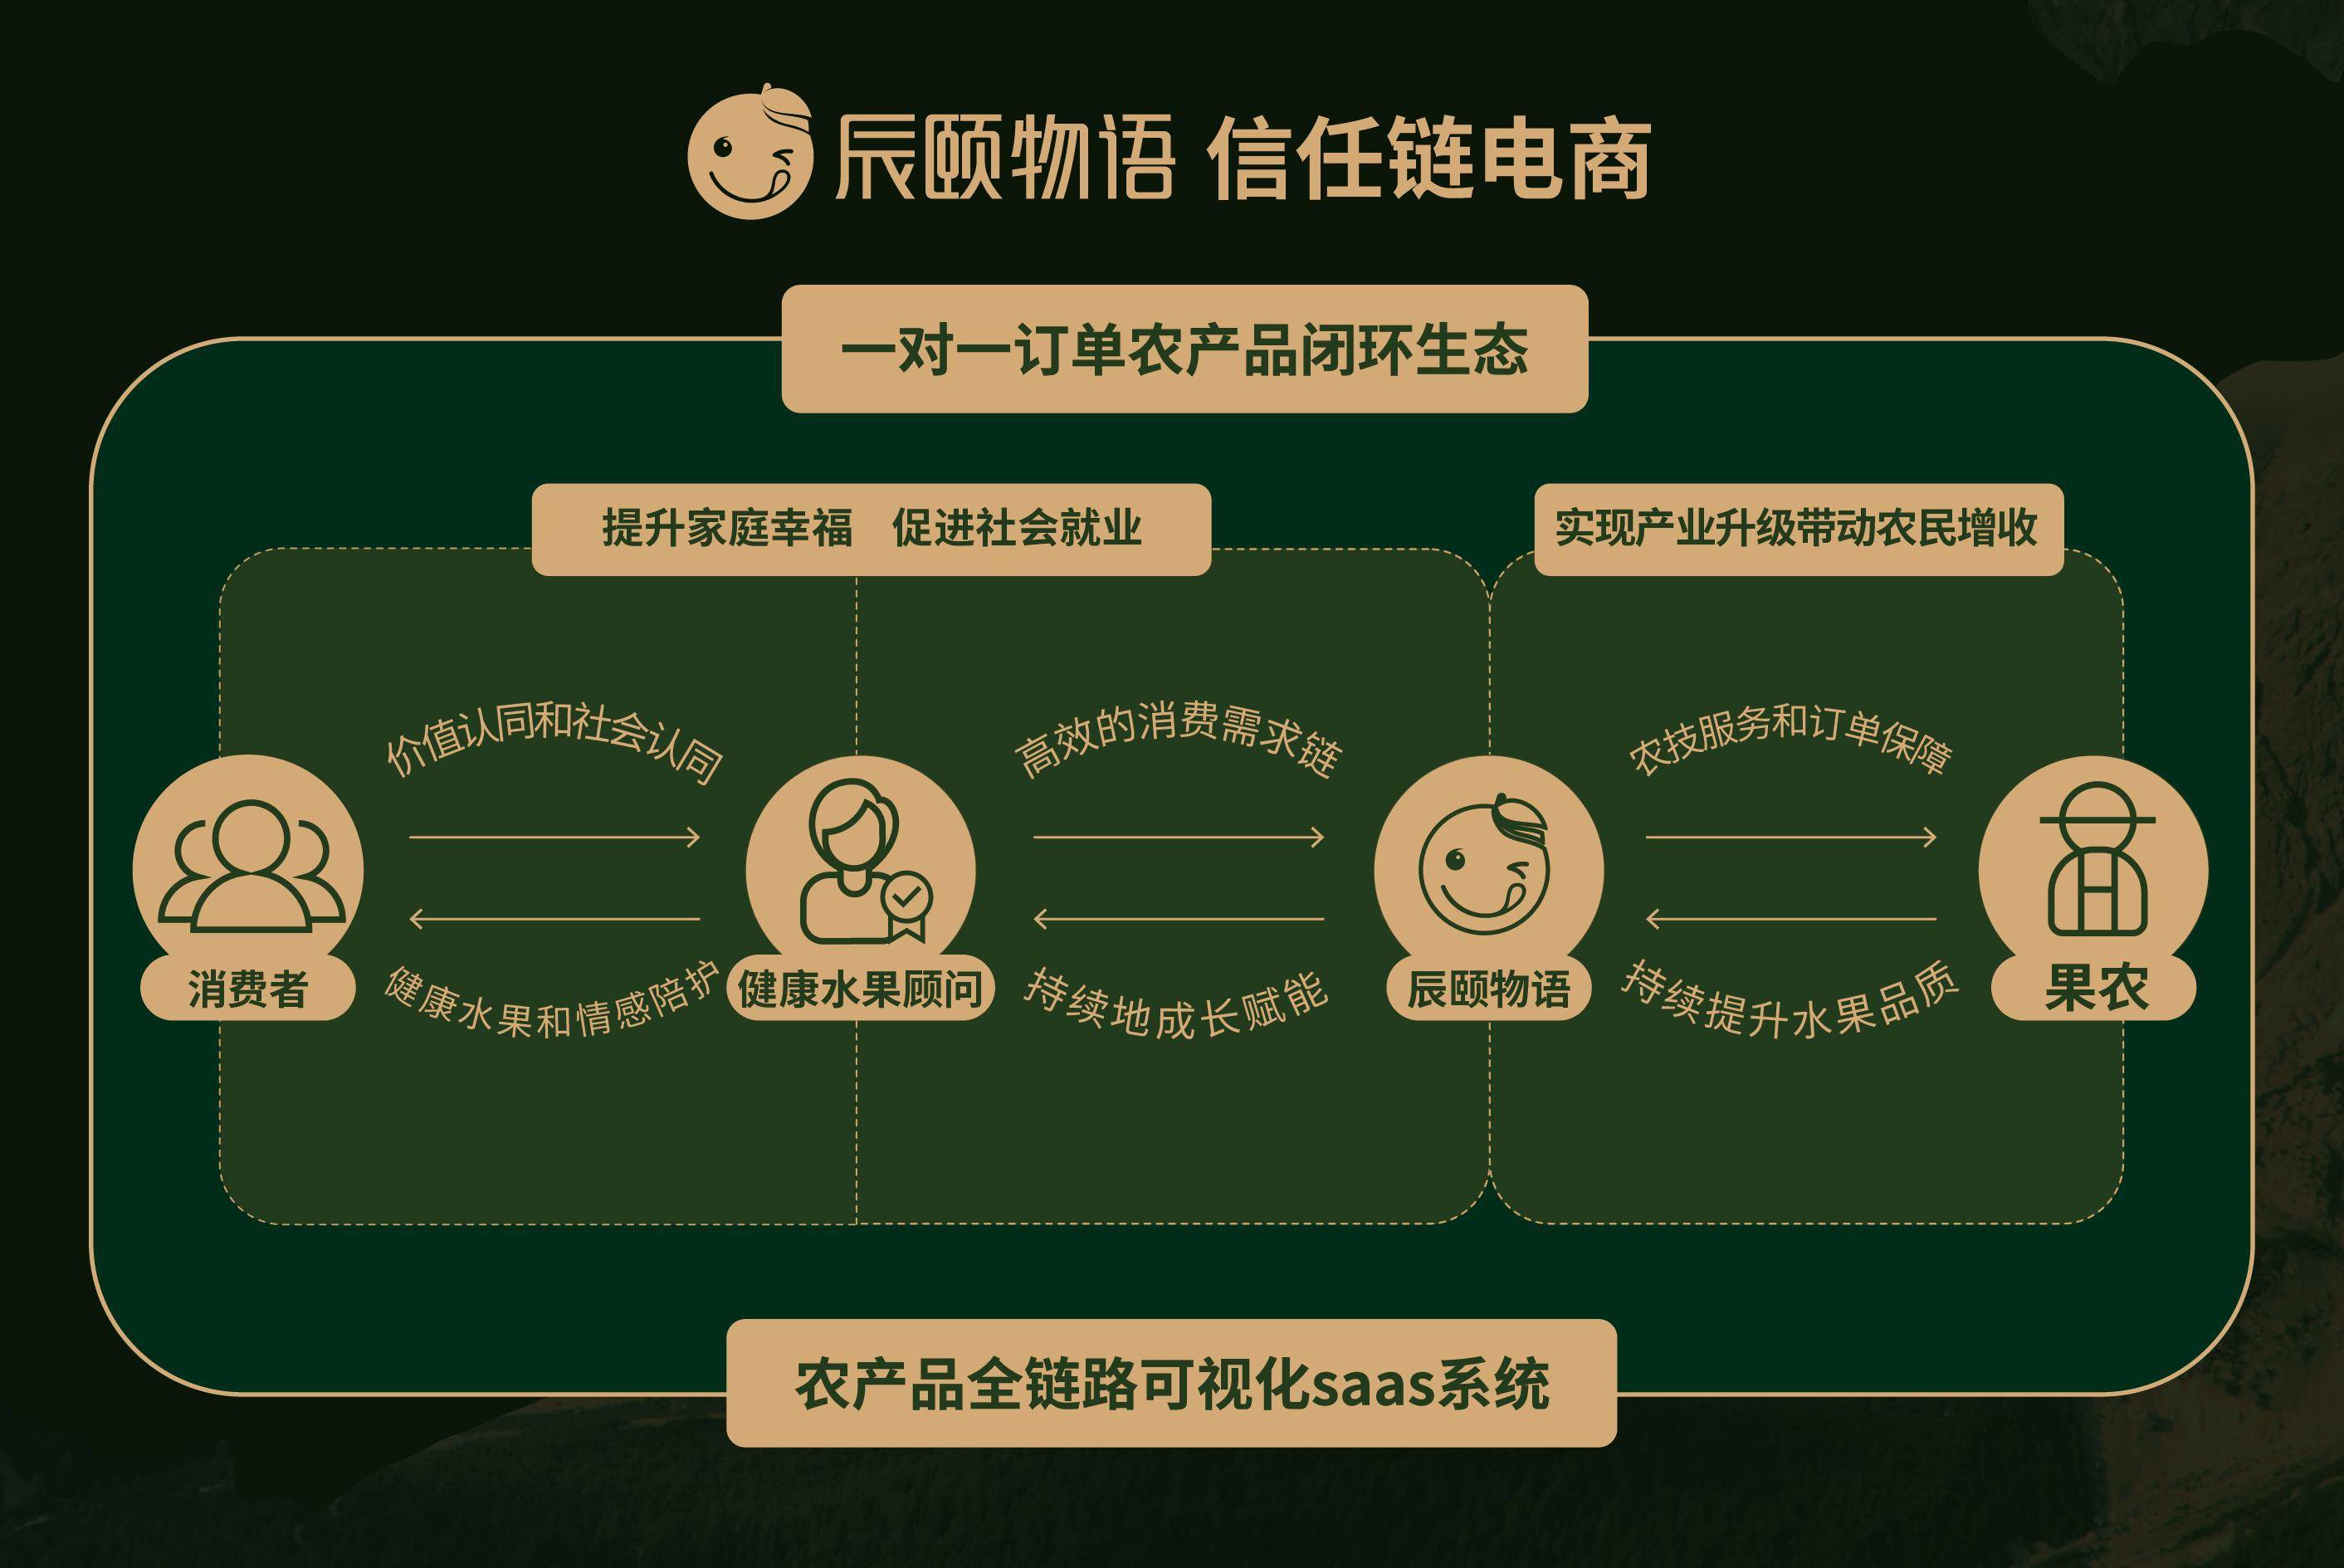 天博官方网站2022华夏农业企业500强正式颁发辰颐物语荣登306位(图2)